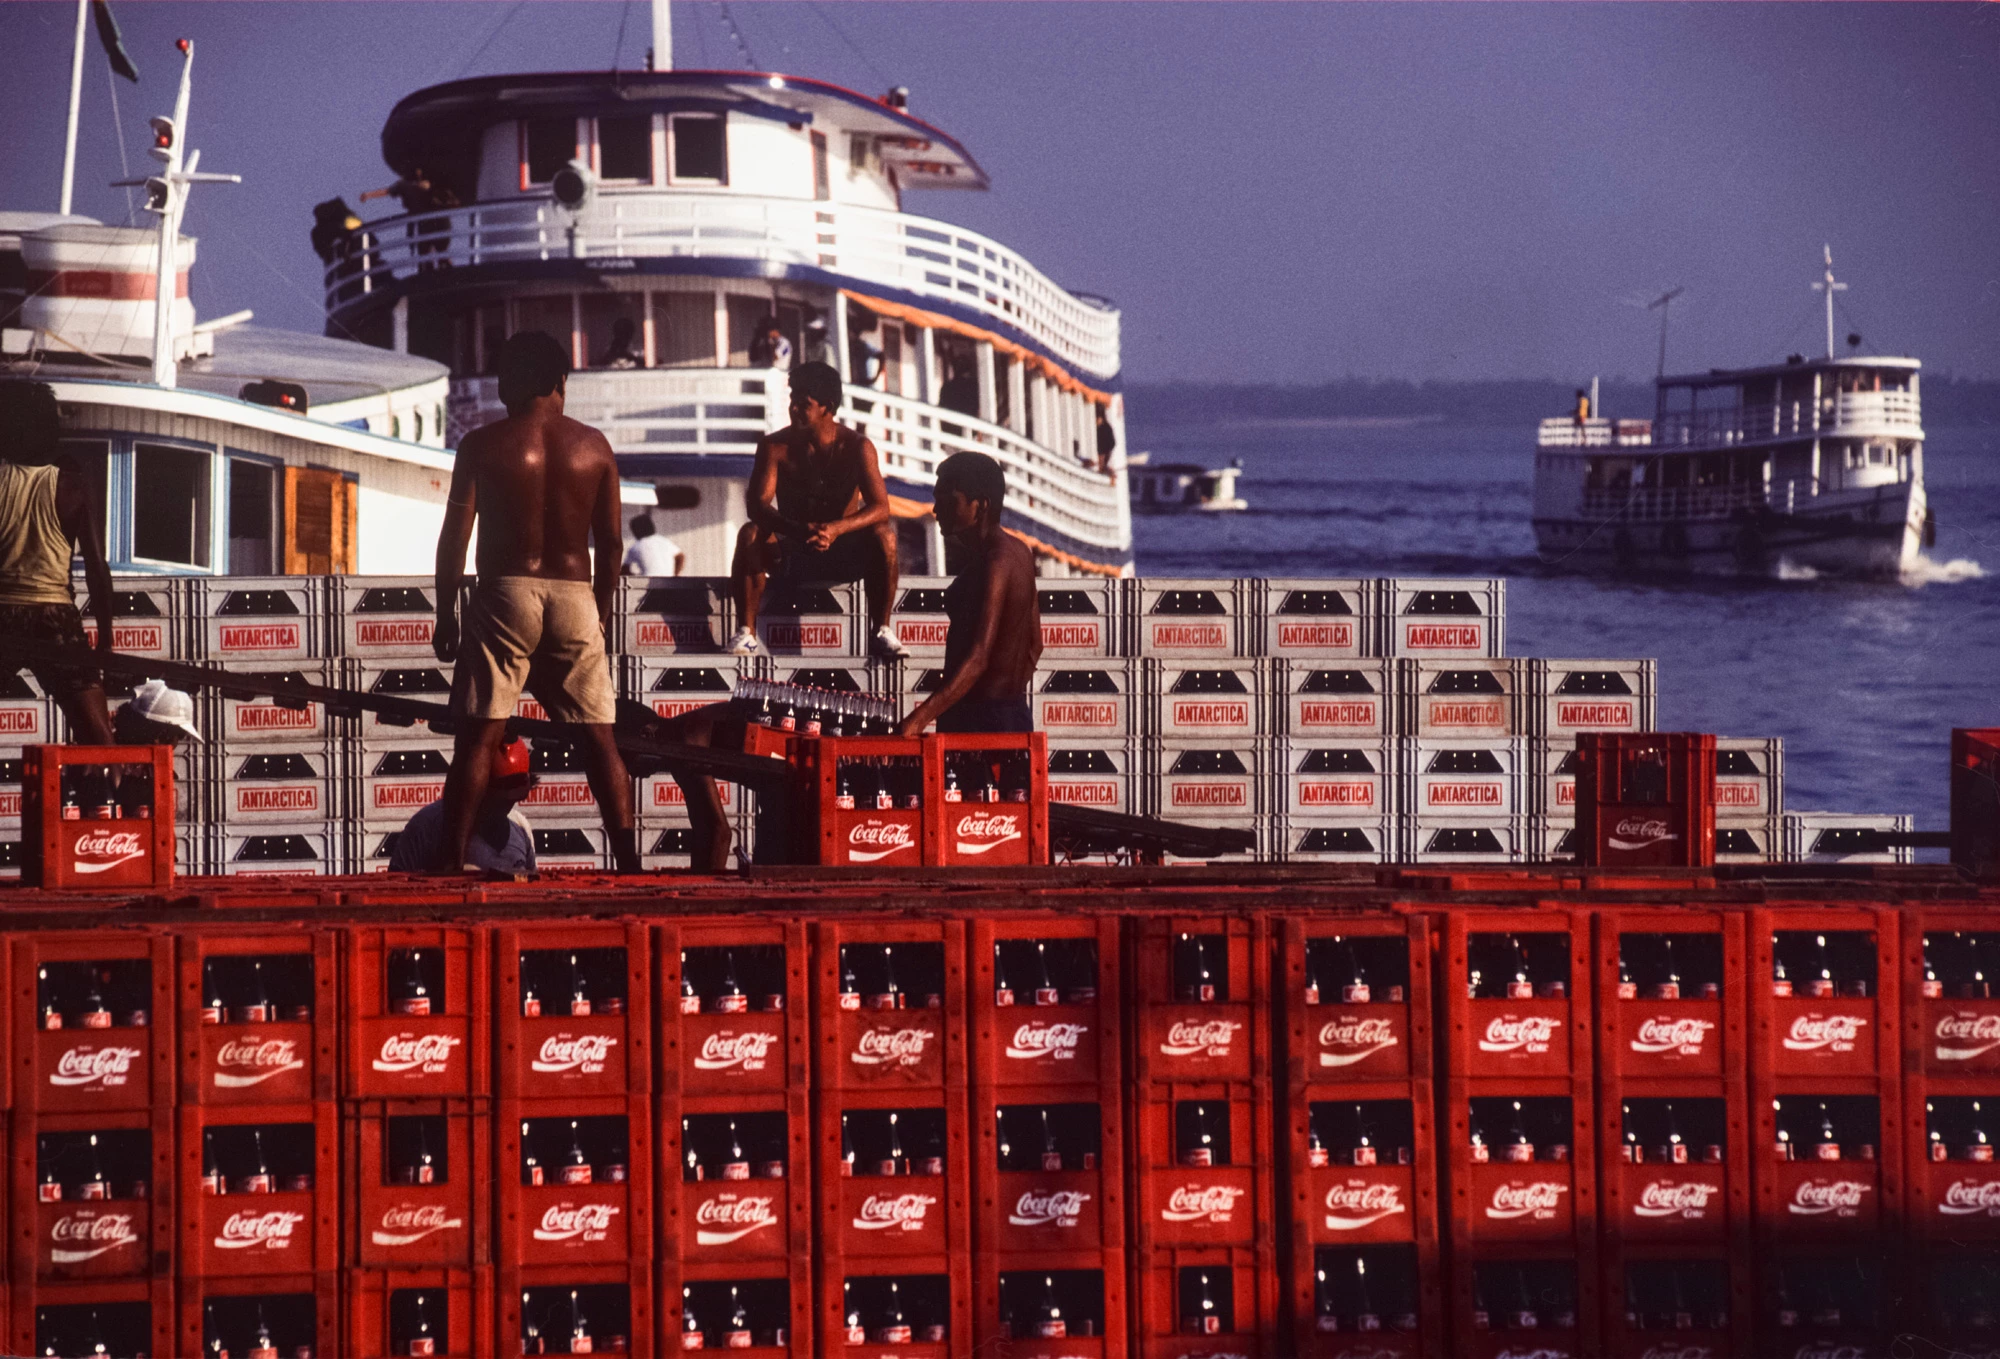 Déchargement d'une cargaison de ?Coca-Cola? dans le port de Manaus, Brésil. (Photo by Yves GELLIE/Gamma-Rapho via Getty Images)